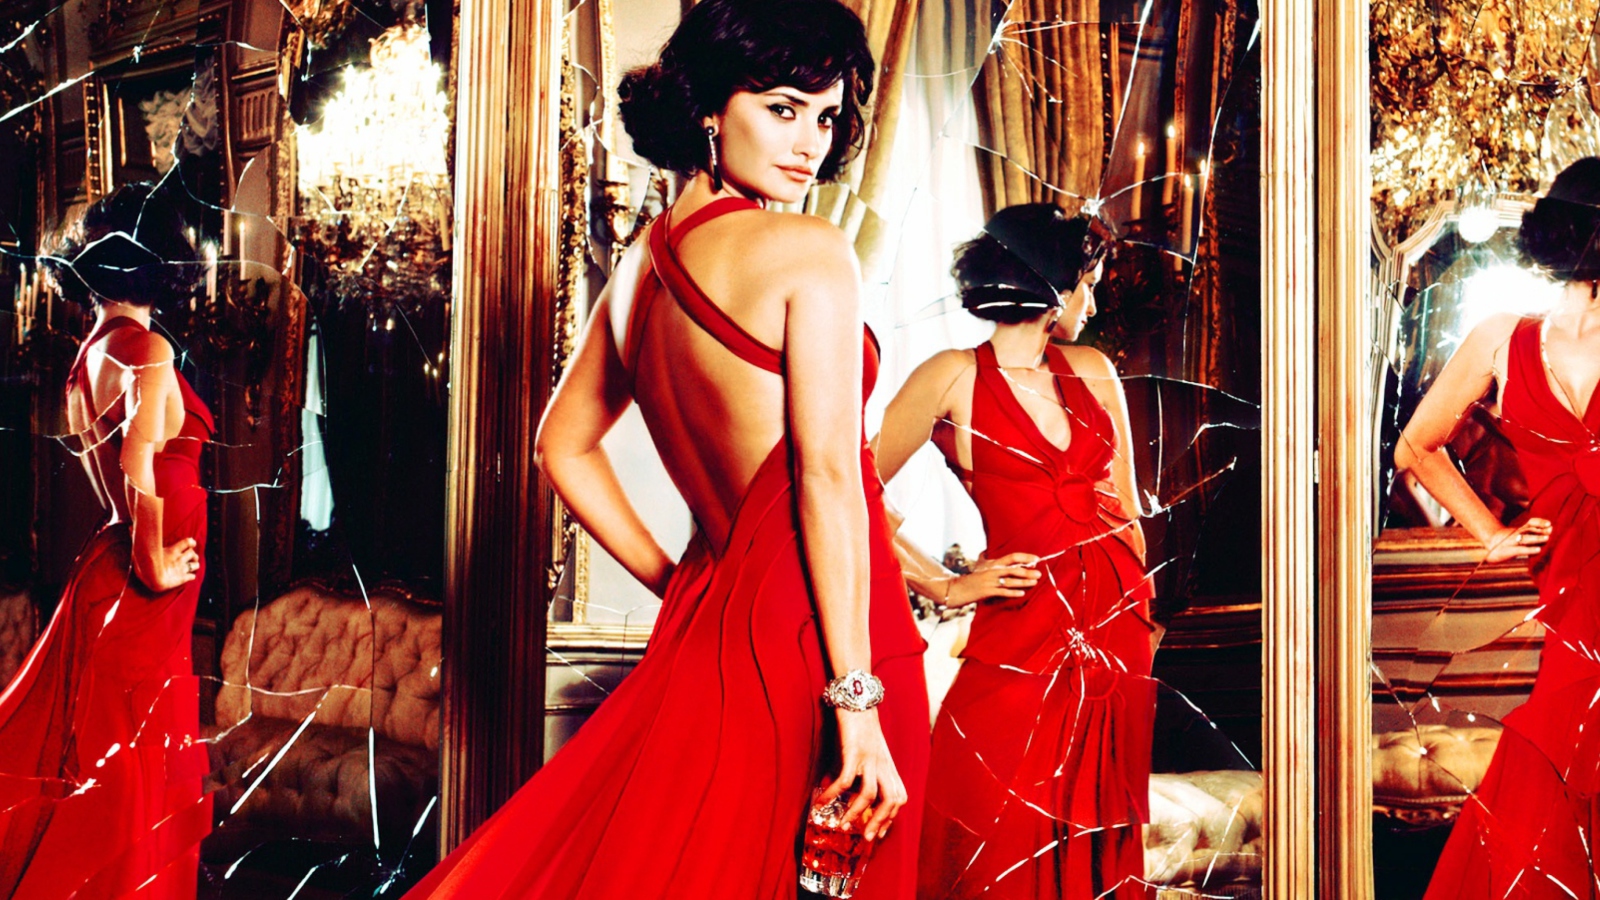 Обои Penelope Cruz In Glamorous Red Dress 1600x900